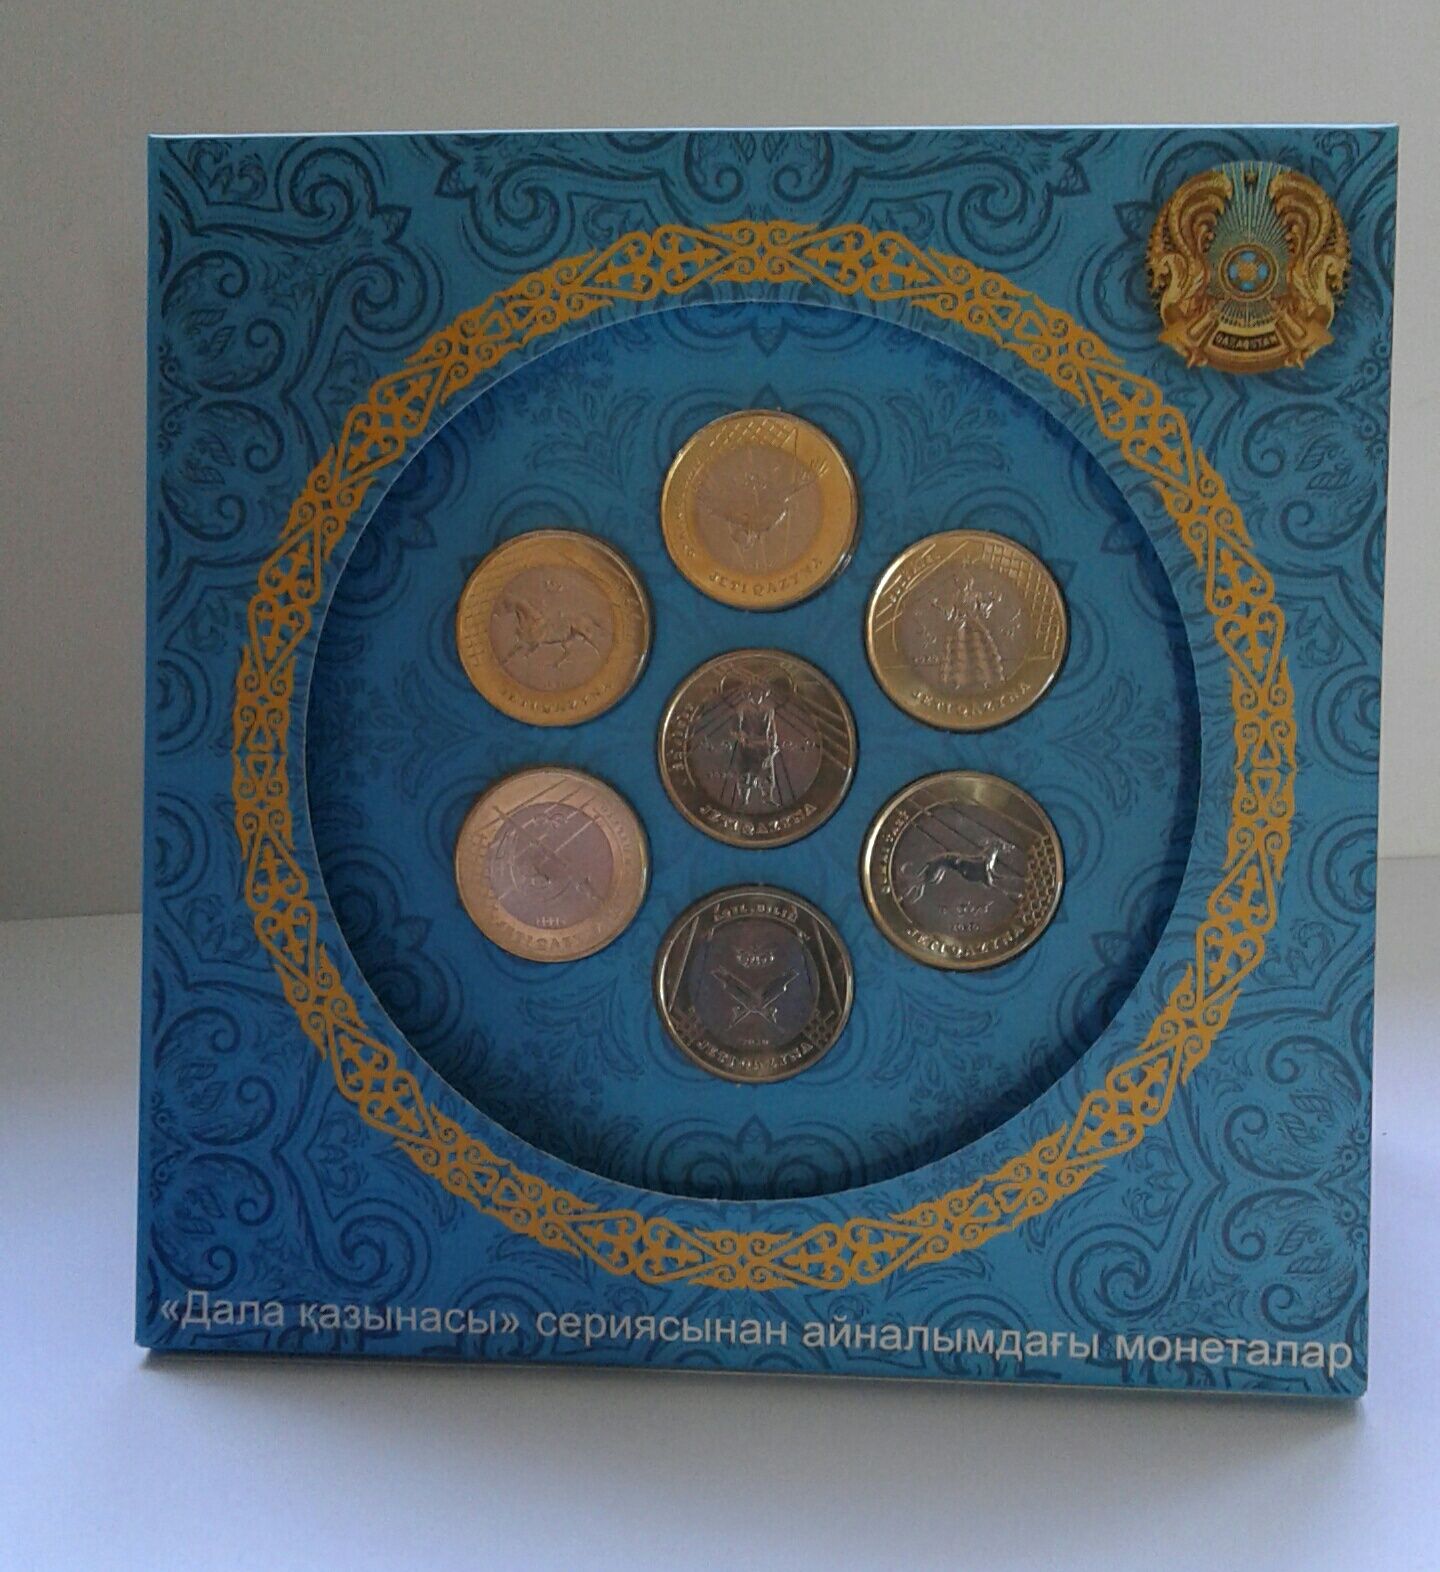 Набор монет Жети Казына в капсульном альбоме трансформер